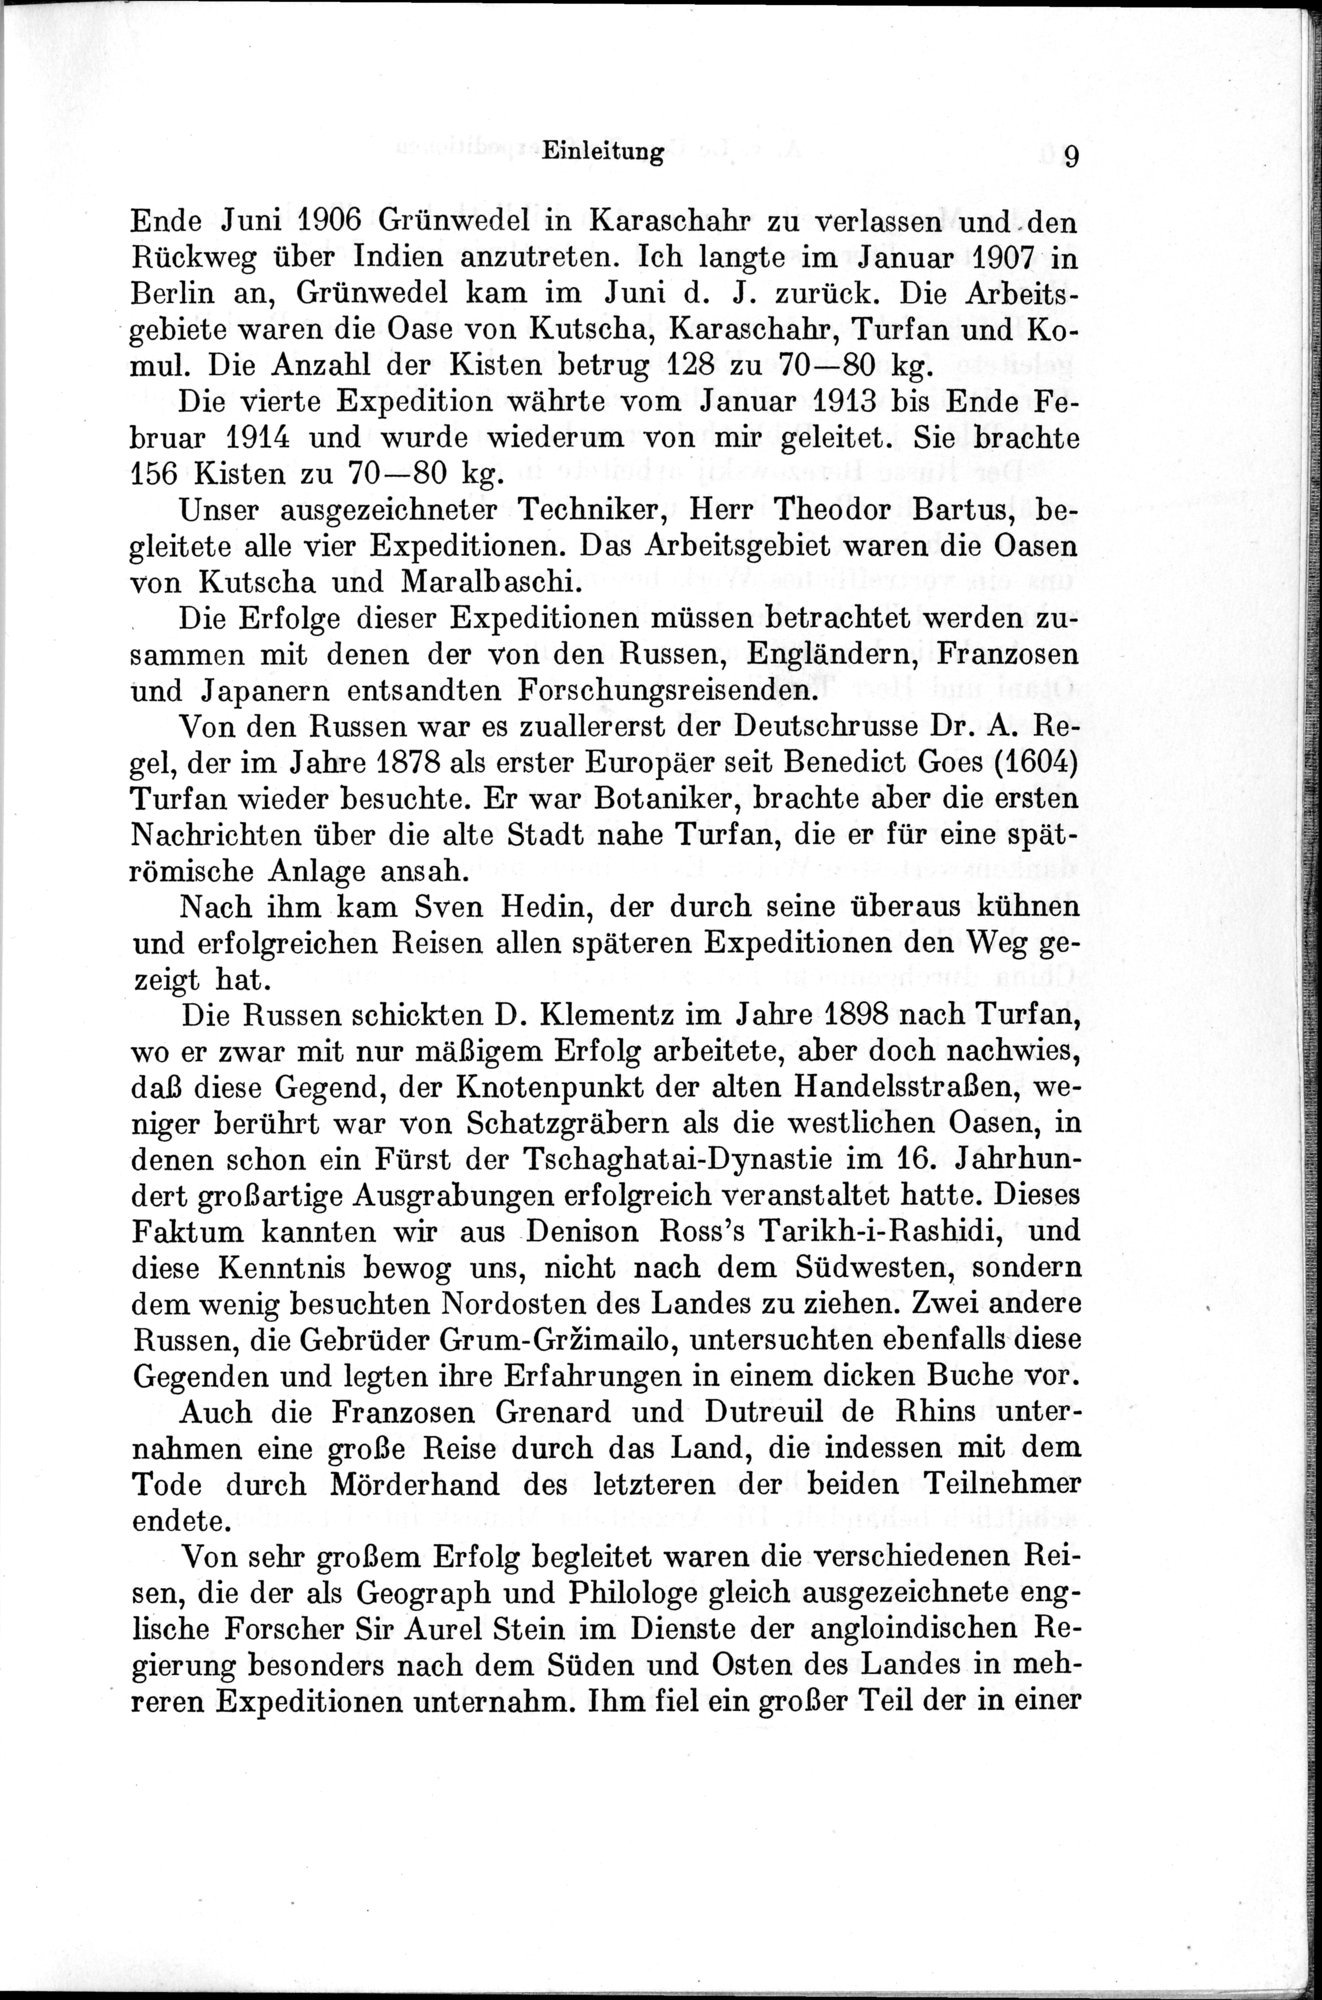 Auf Hellas Spuren in Ostturkistan : vol.1 / Page 25 (Grayscale High Resolution Image)